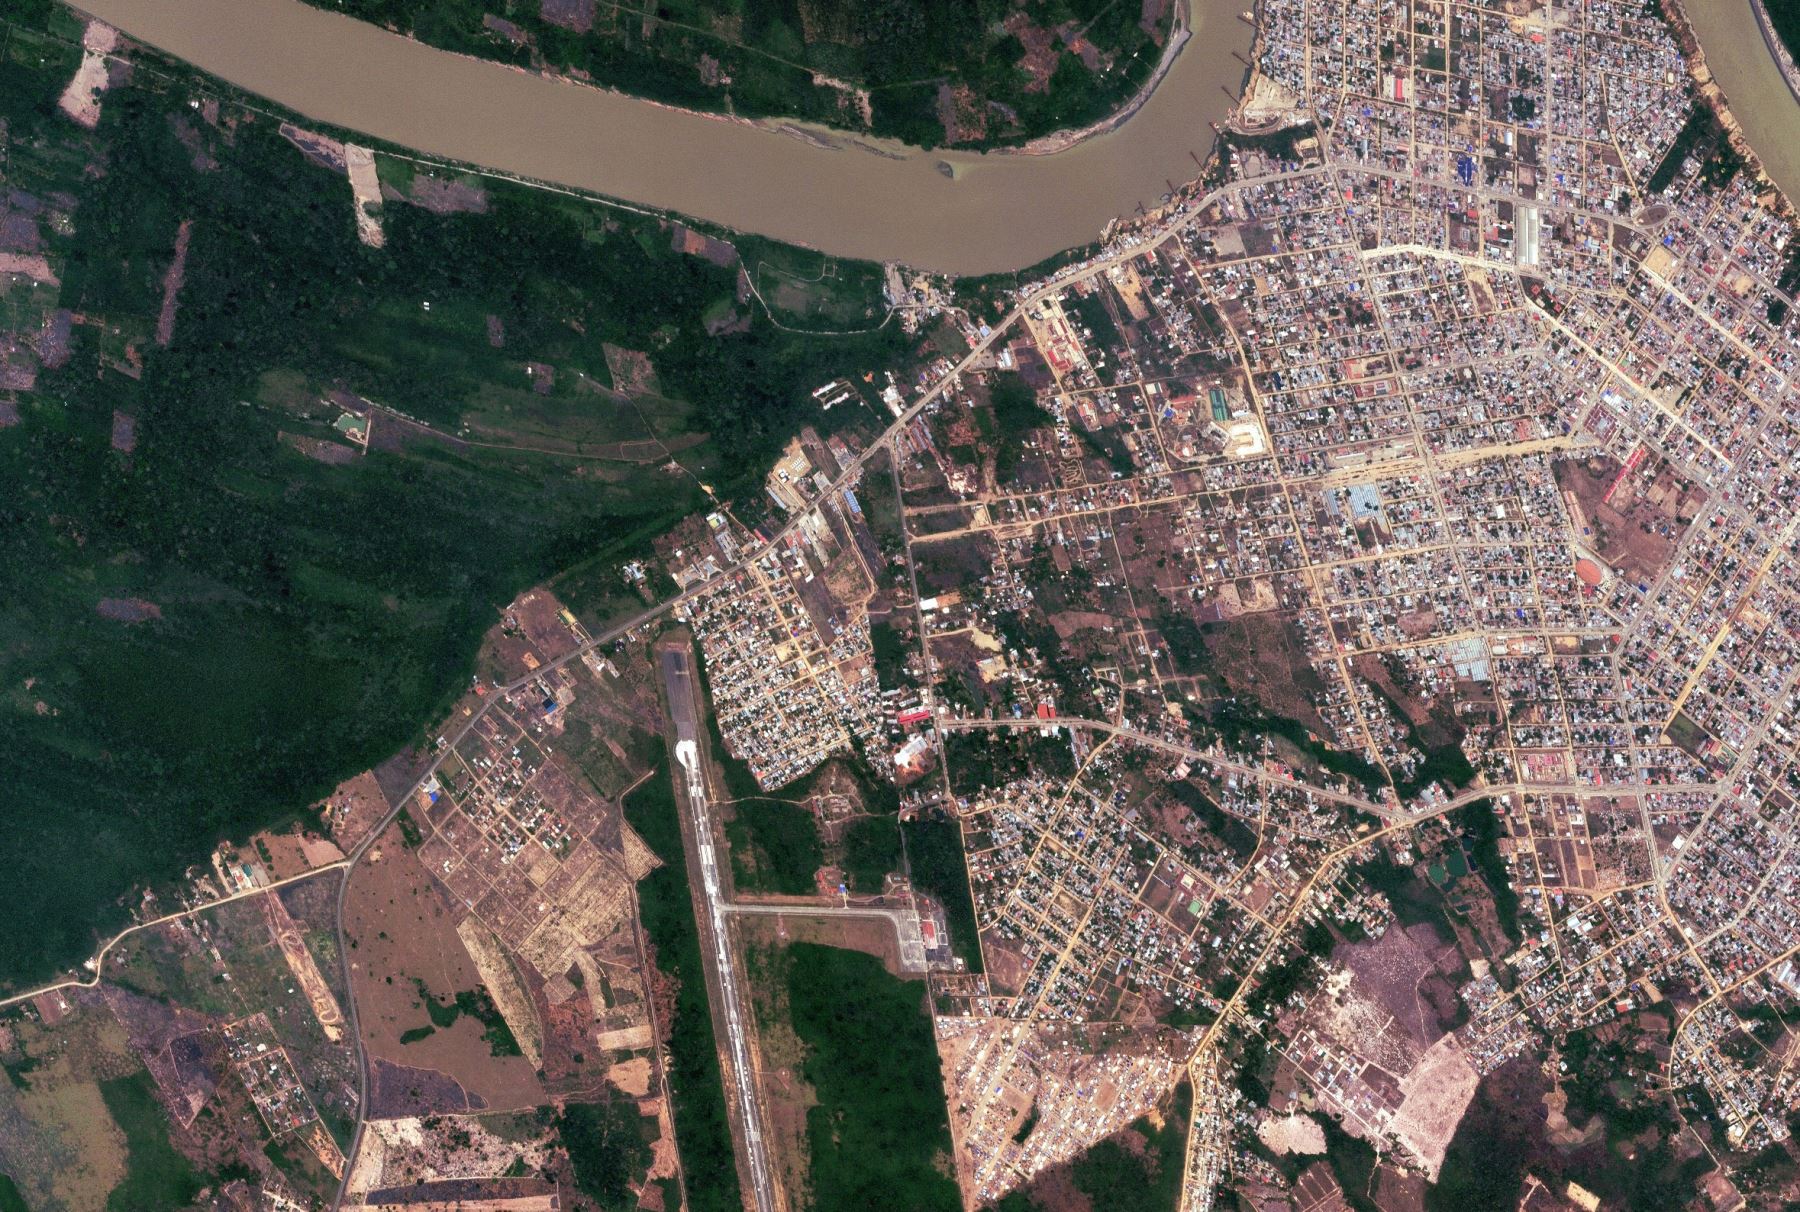 Impresionante imagen tomada de la ciudad de Puerto Maldonado, en Madre de Dios, tomada desde el satélite PerúSAT-1.